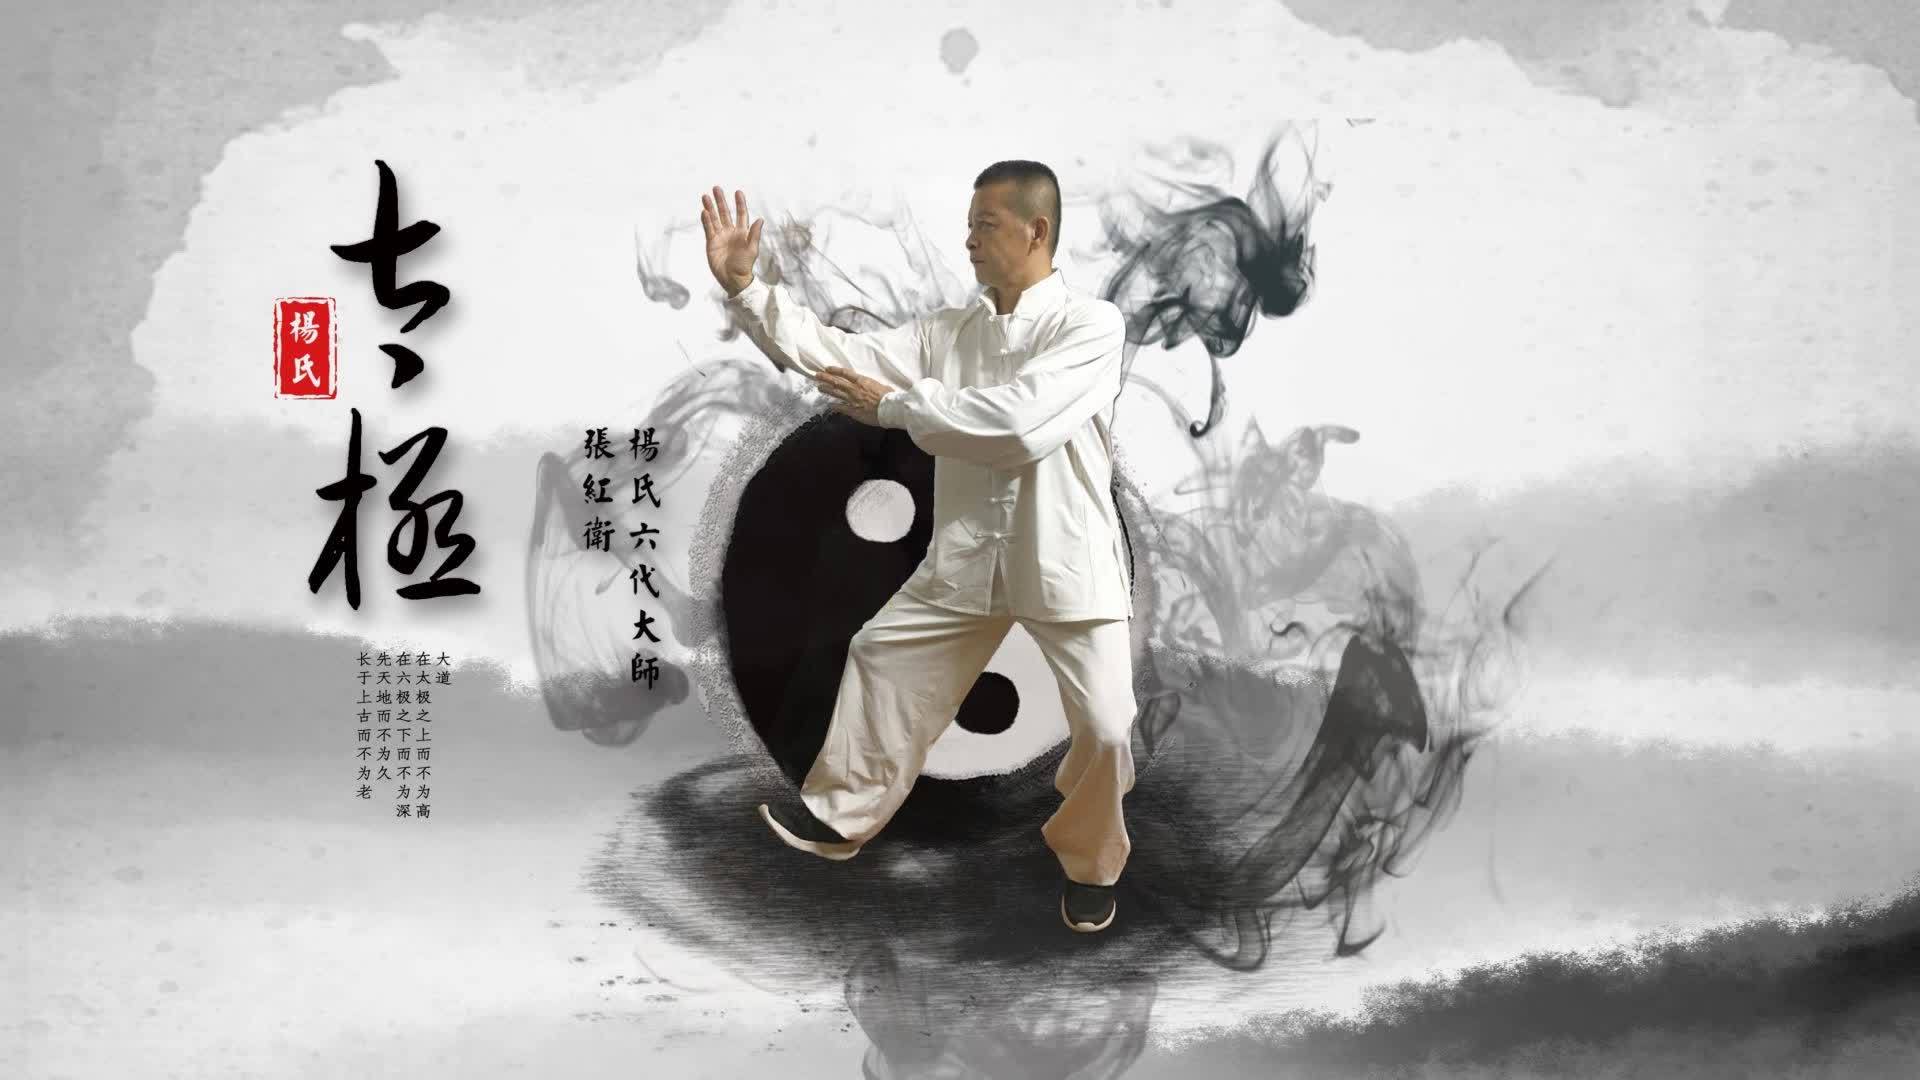 太极拳为武术拳种之一，是华夏民族值得骄傲的宝贵文化遗产